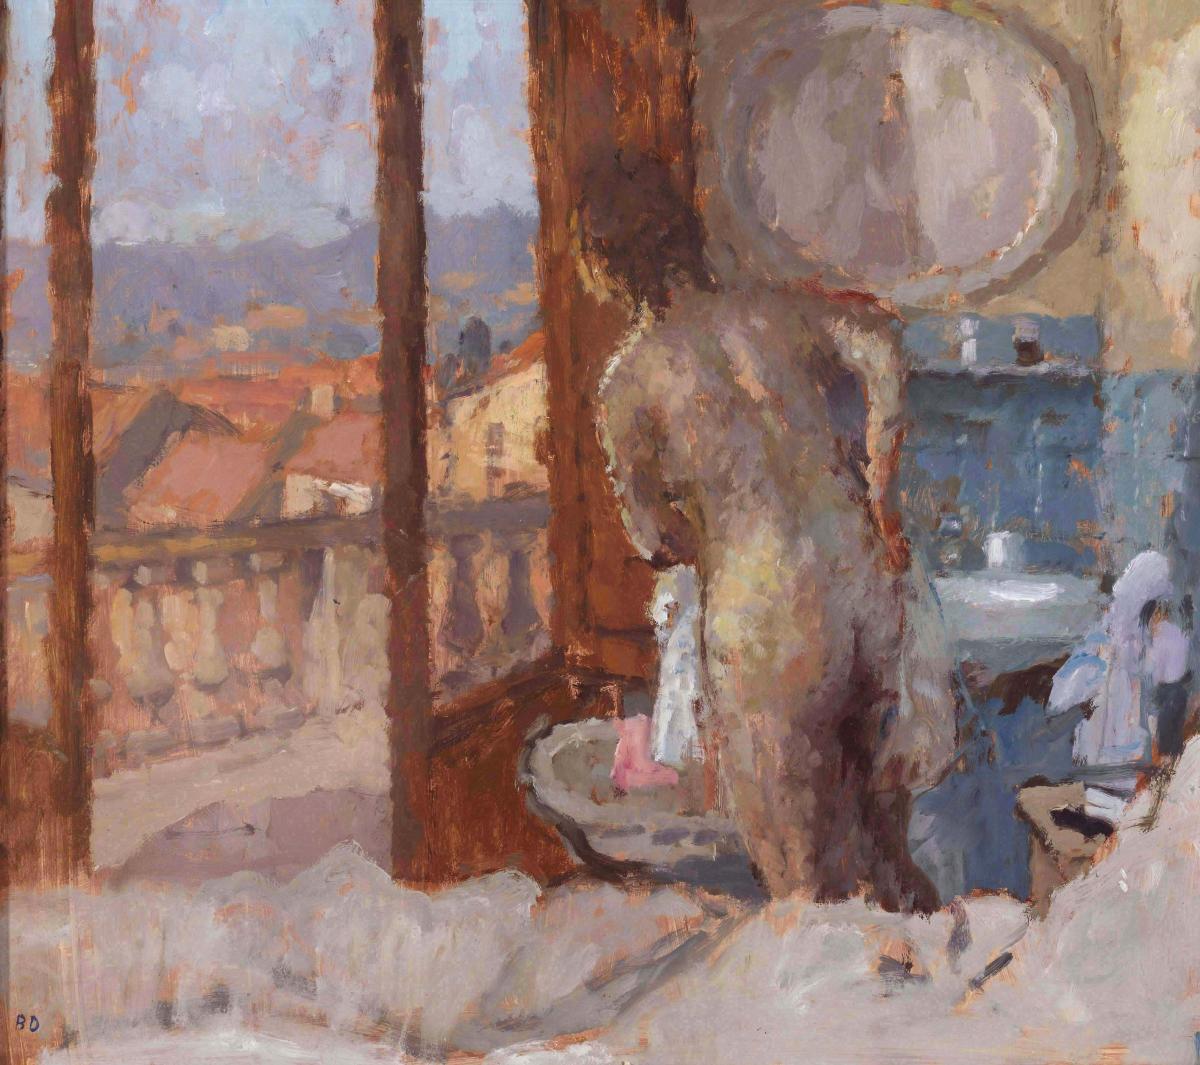 Balcony Room, San Gimignano, Bernard Dunstan R.A., R.W.A., N.E.A.C. (1920-2017)